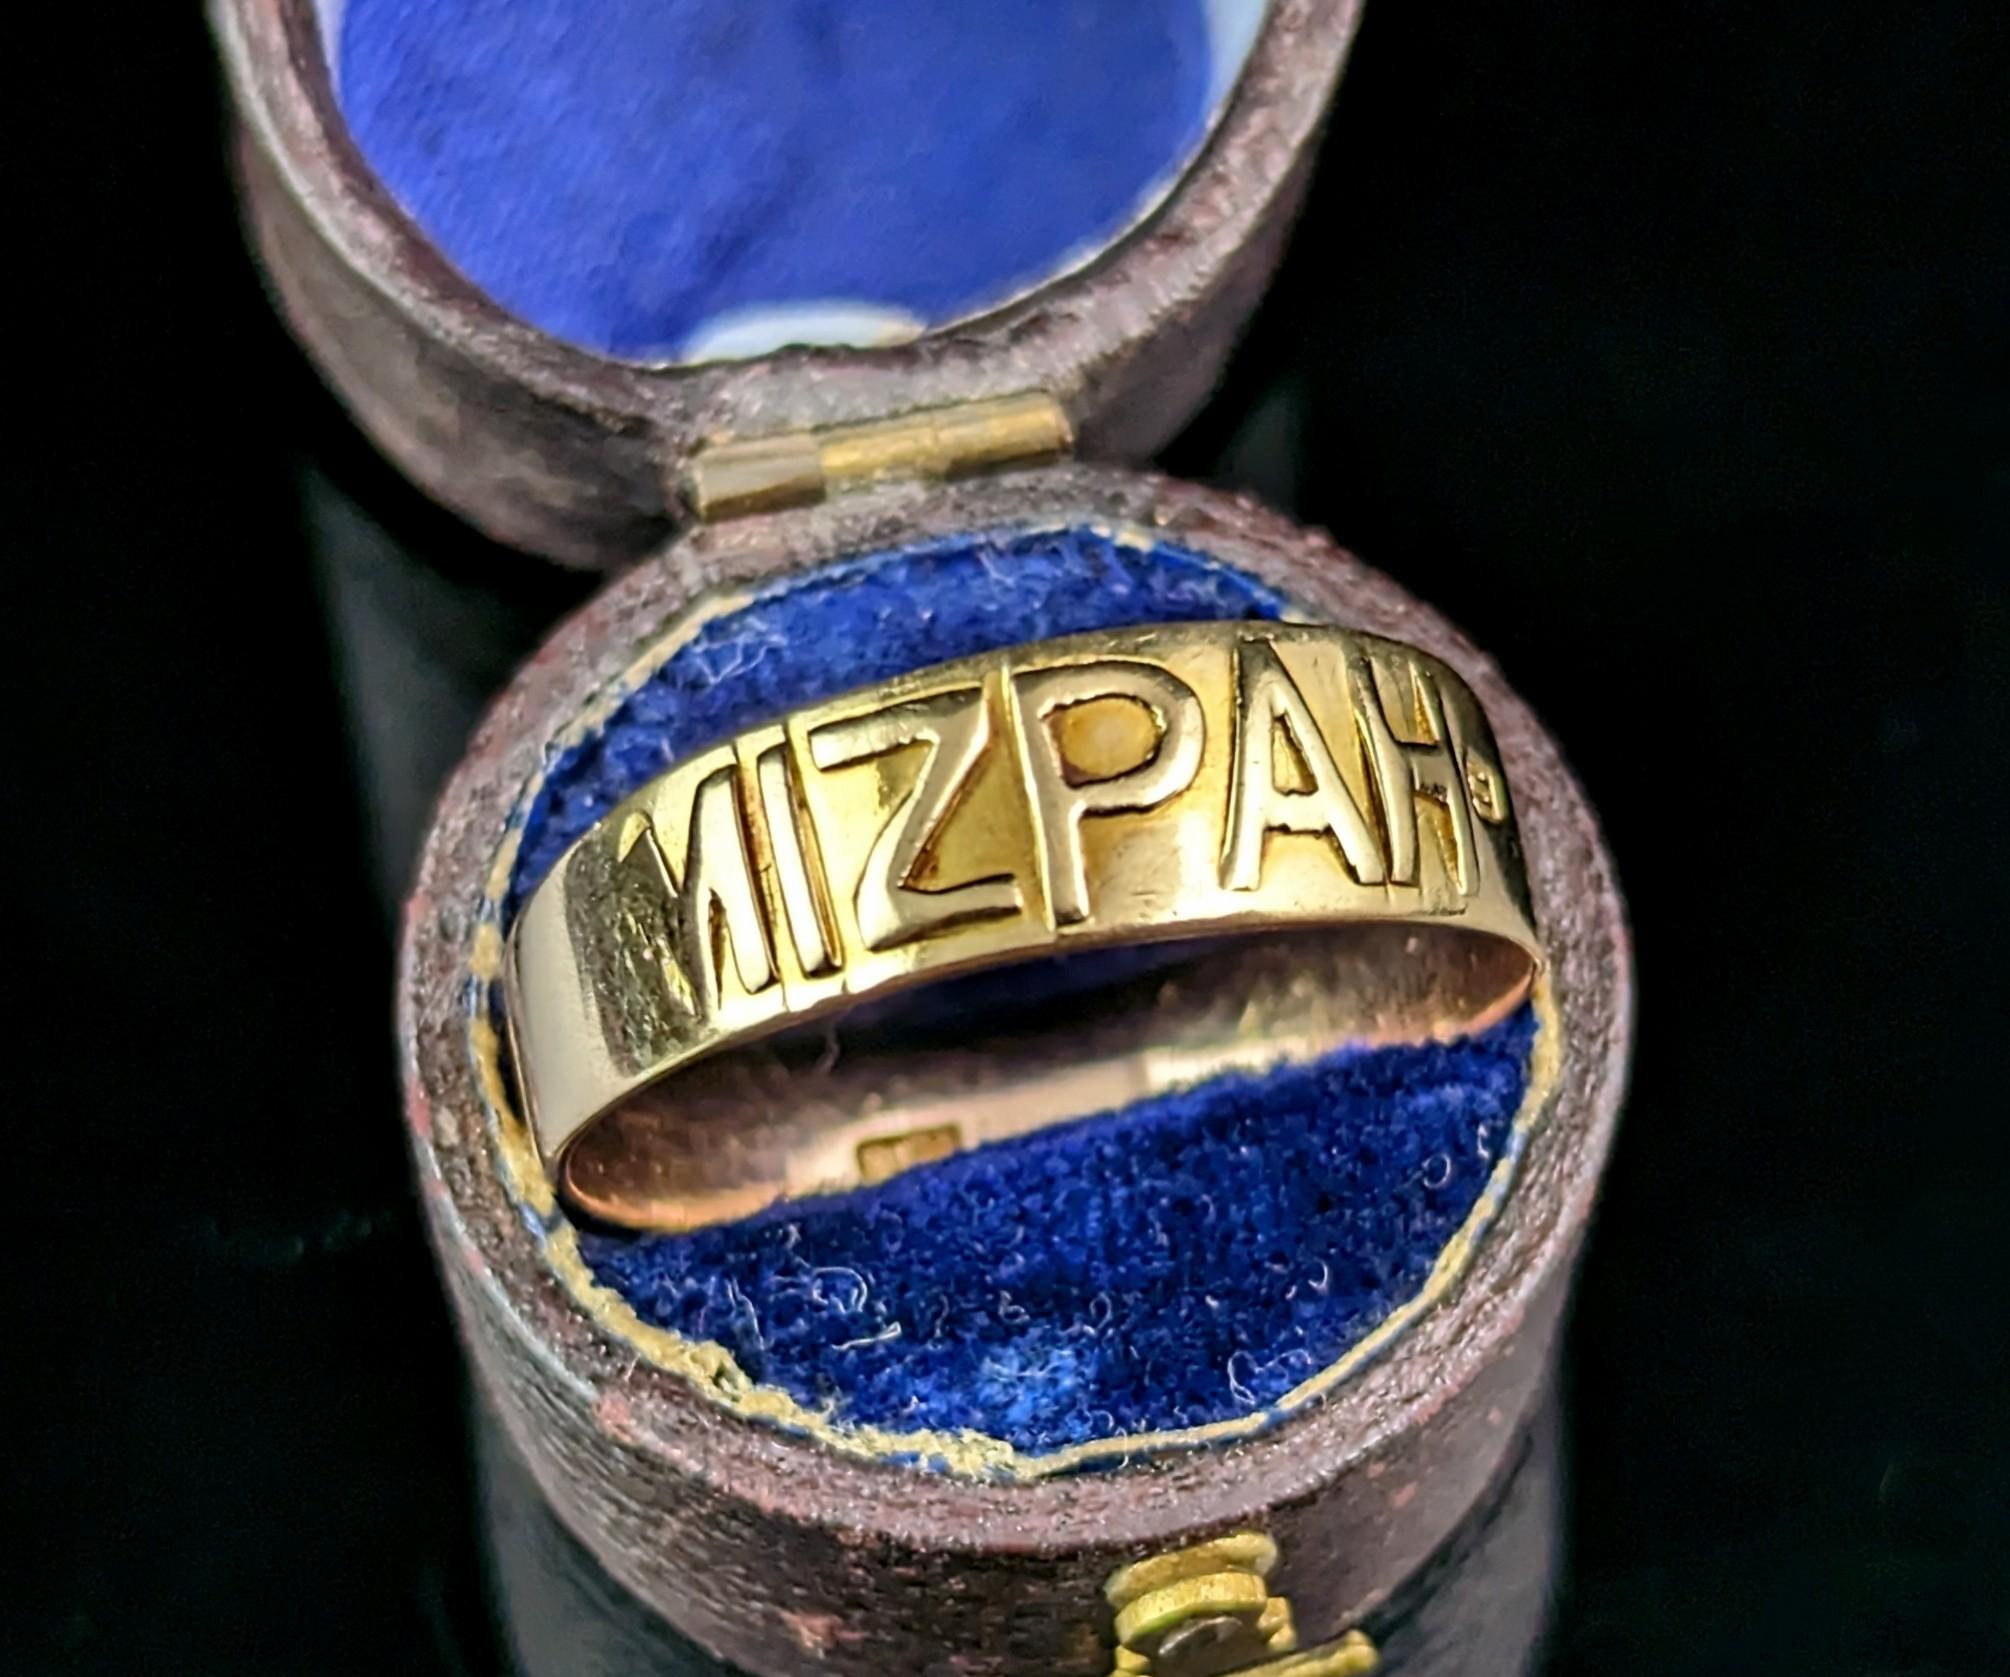 Eine schöne, viktorianische 9ct Gold Mizpah Ring.

Es ist ein Ring im Stil eines Bandes mit aufgesetztem Gelbgold-Schriftzug auf der Vorderseite des Bandes, der Mizpah bedeutet.

Dieser Ring ist ein zwei getönten Gold, wie es einen Ersatz Hälfte